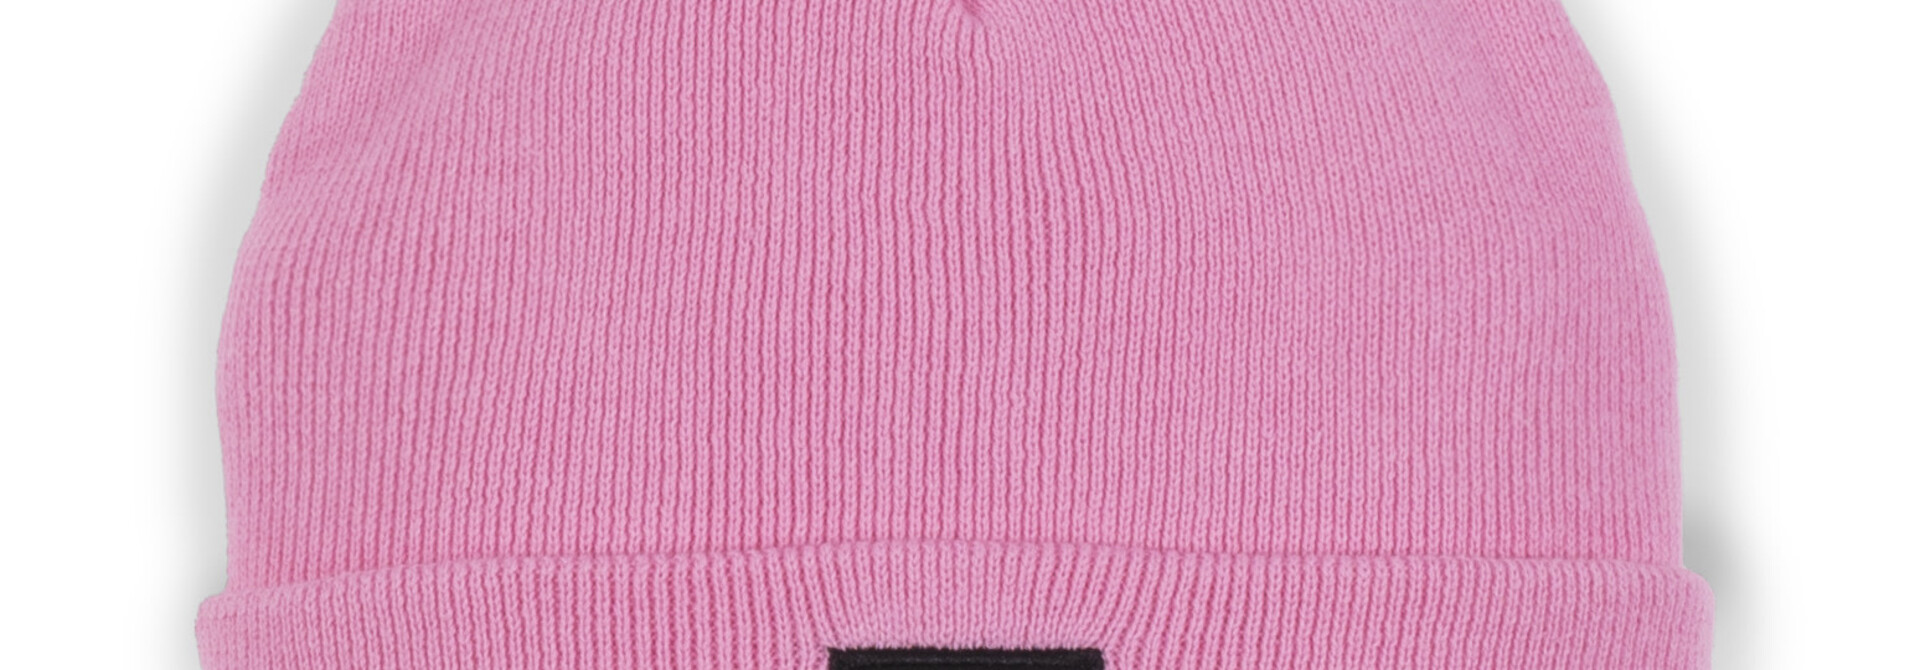 Tuque en tricot BASIC - ROSE